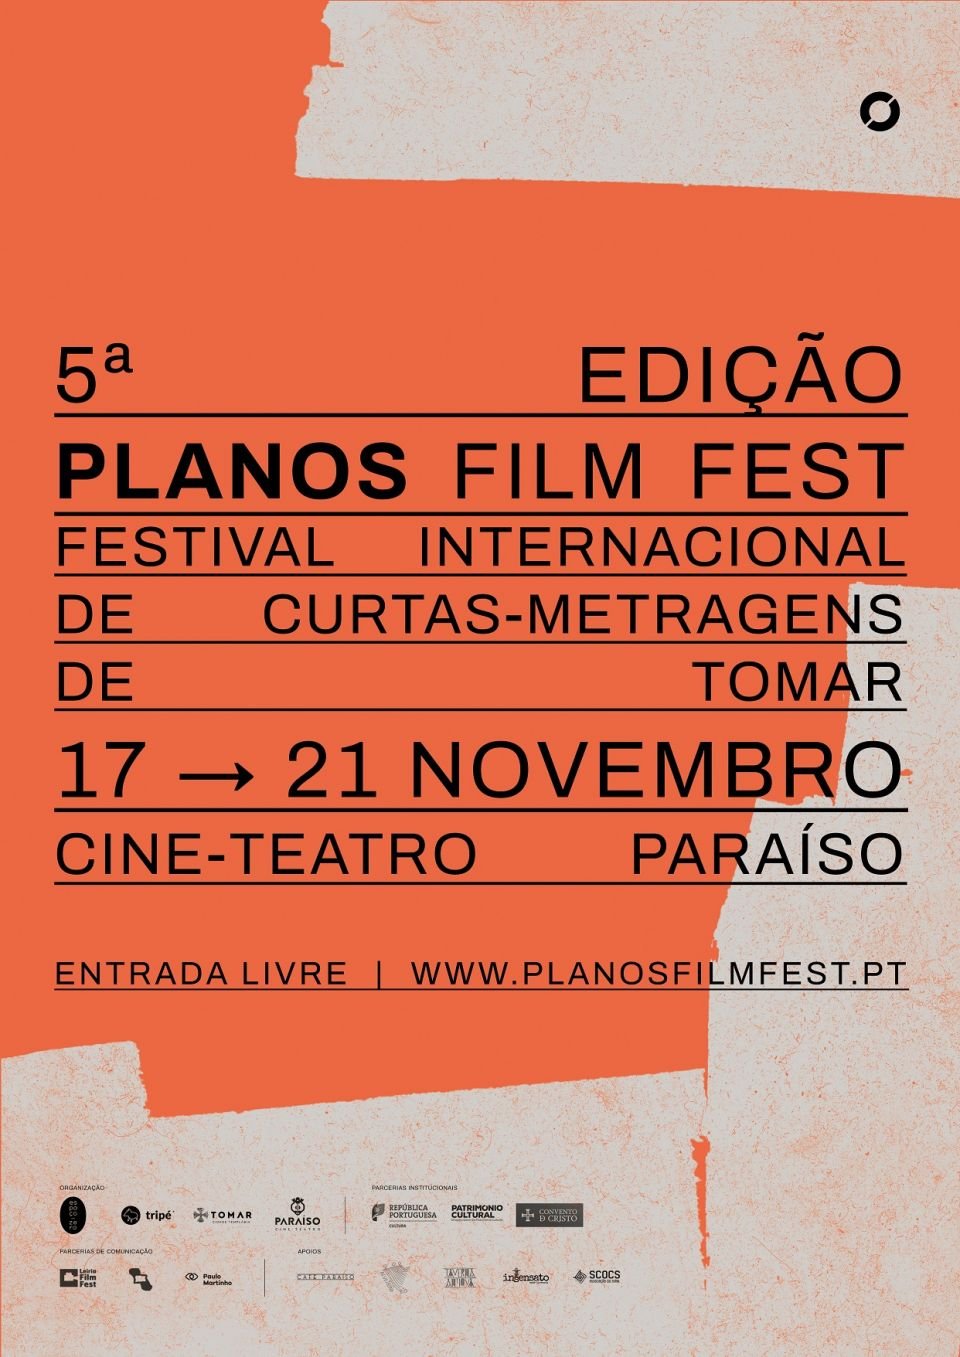 Planos Film Fest 2021 - 5.º Festival de Curtas-Metragens de Tomar